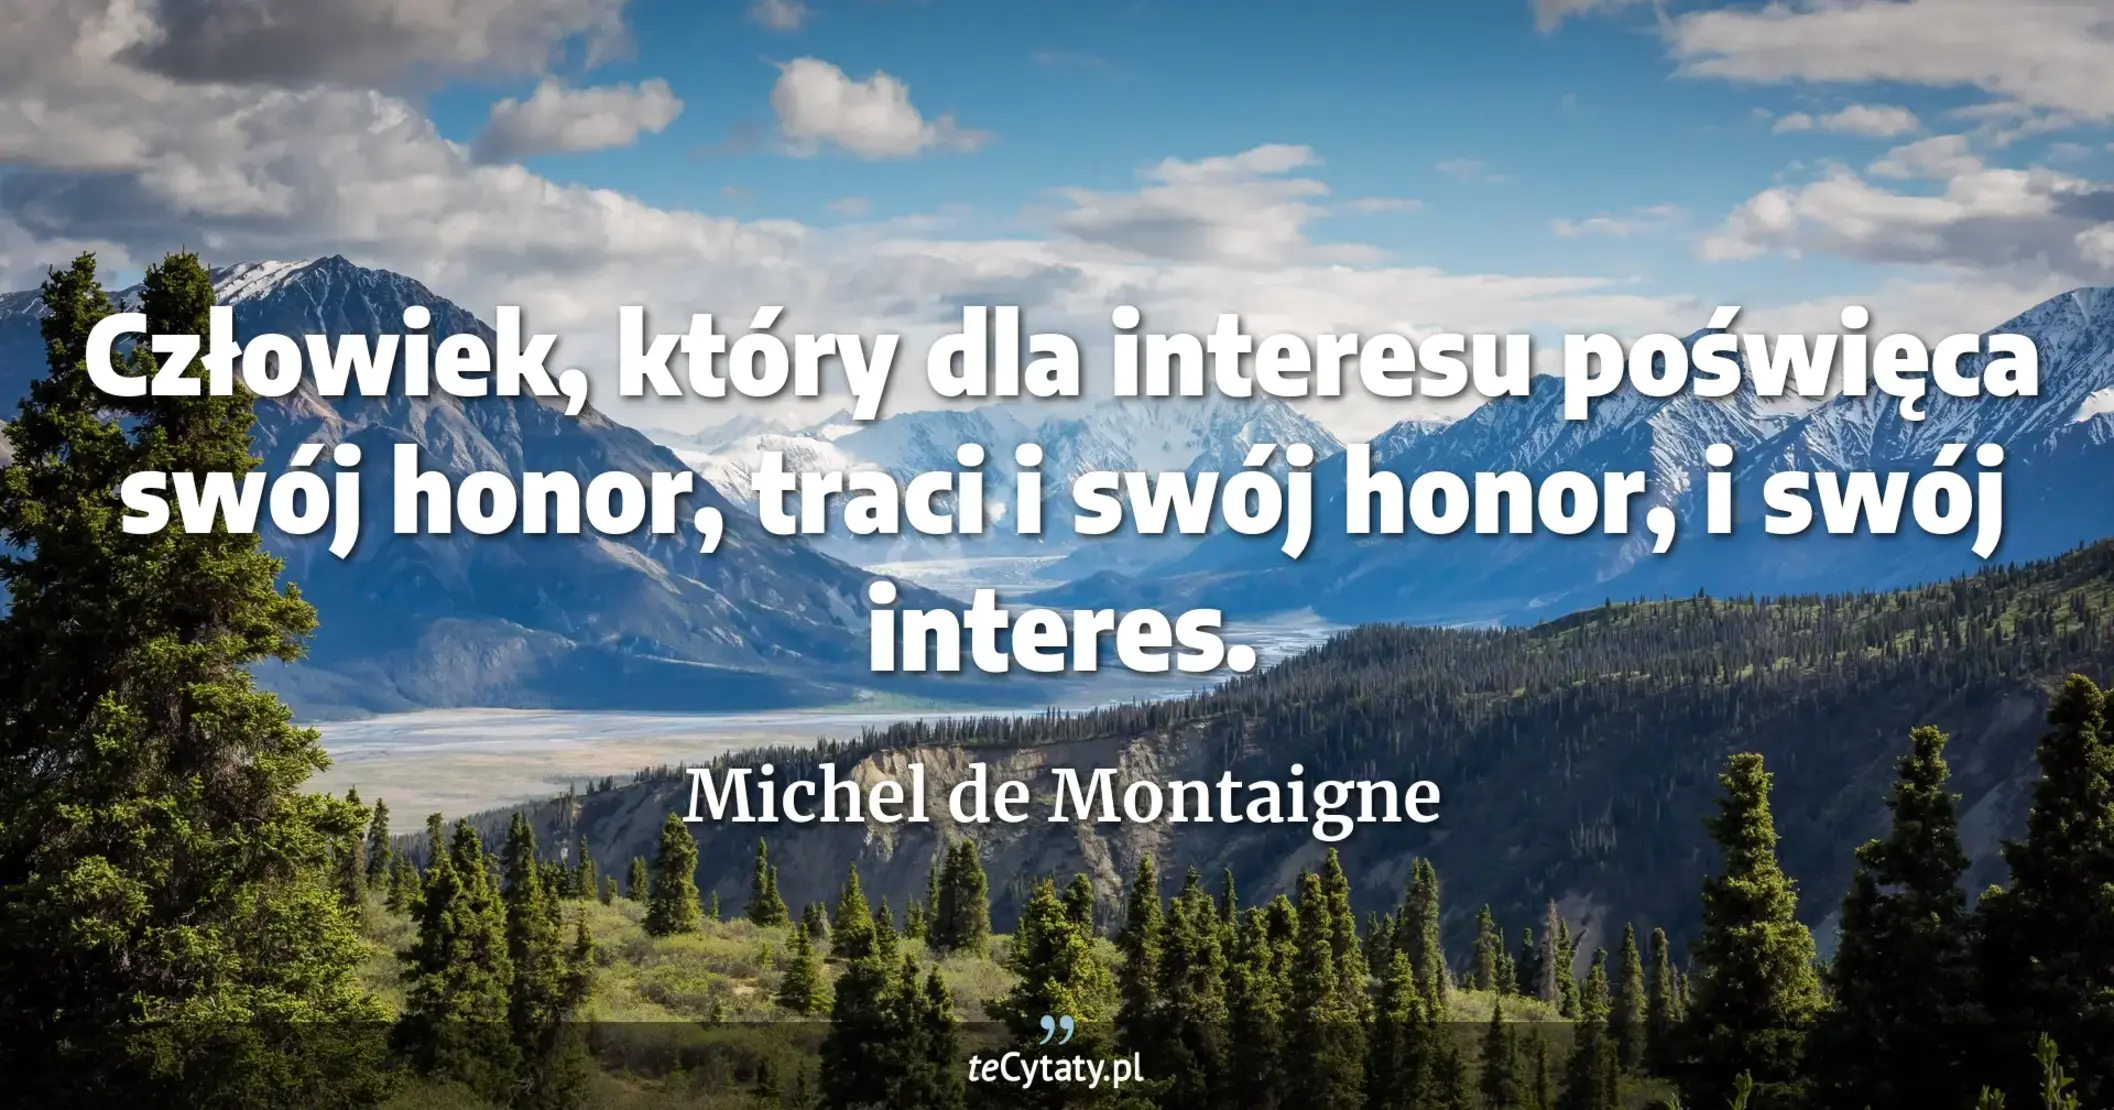 Człowiek, który dla interesu poświęca swój honor, traci i swój honor, i swój interes. - Michel de Montaigne